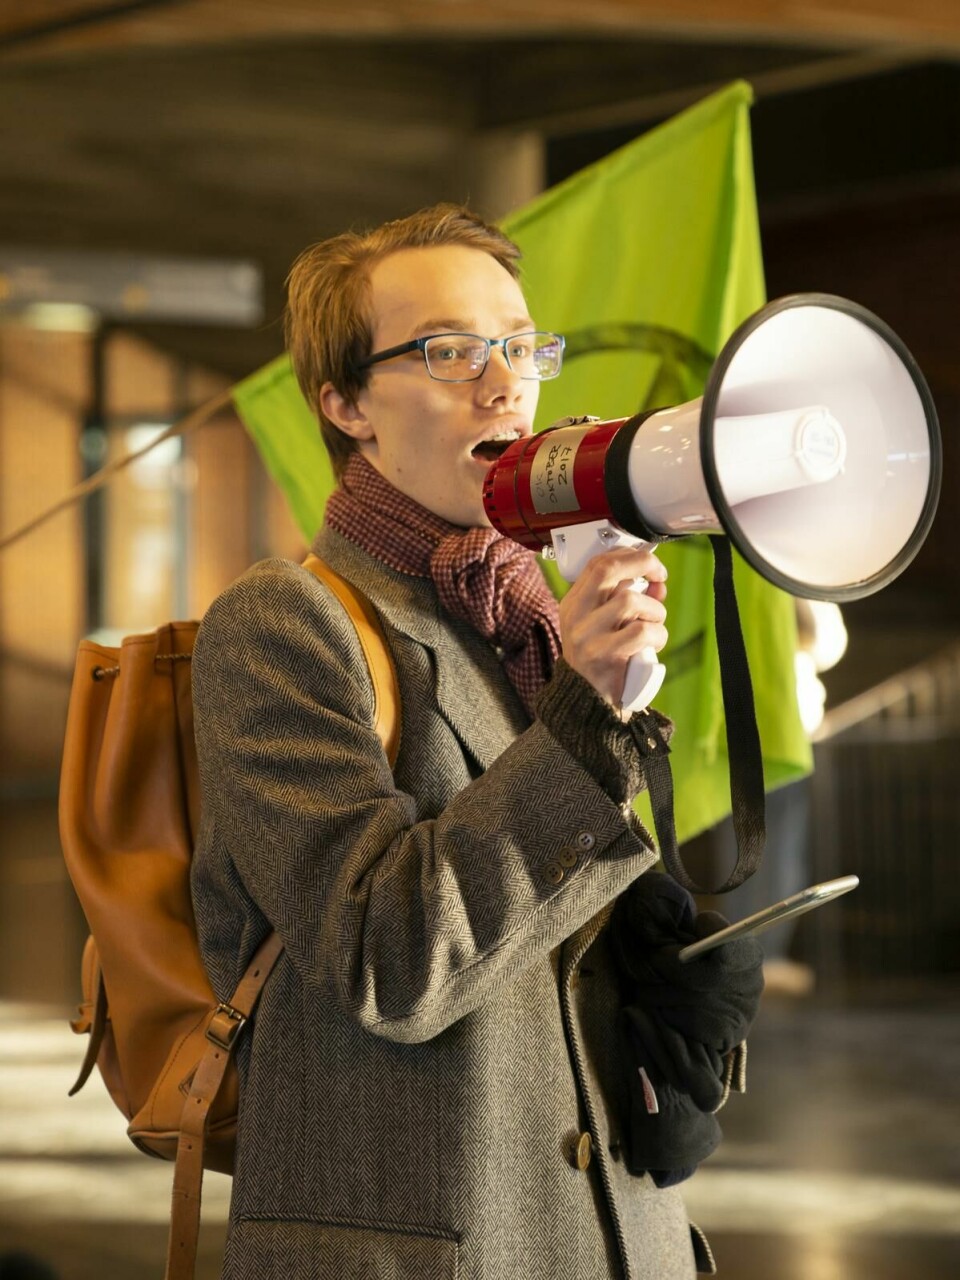 Appell: Adrian Skagen holder appell under Exctinction Rebellion-protesten på Blindern.